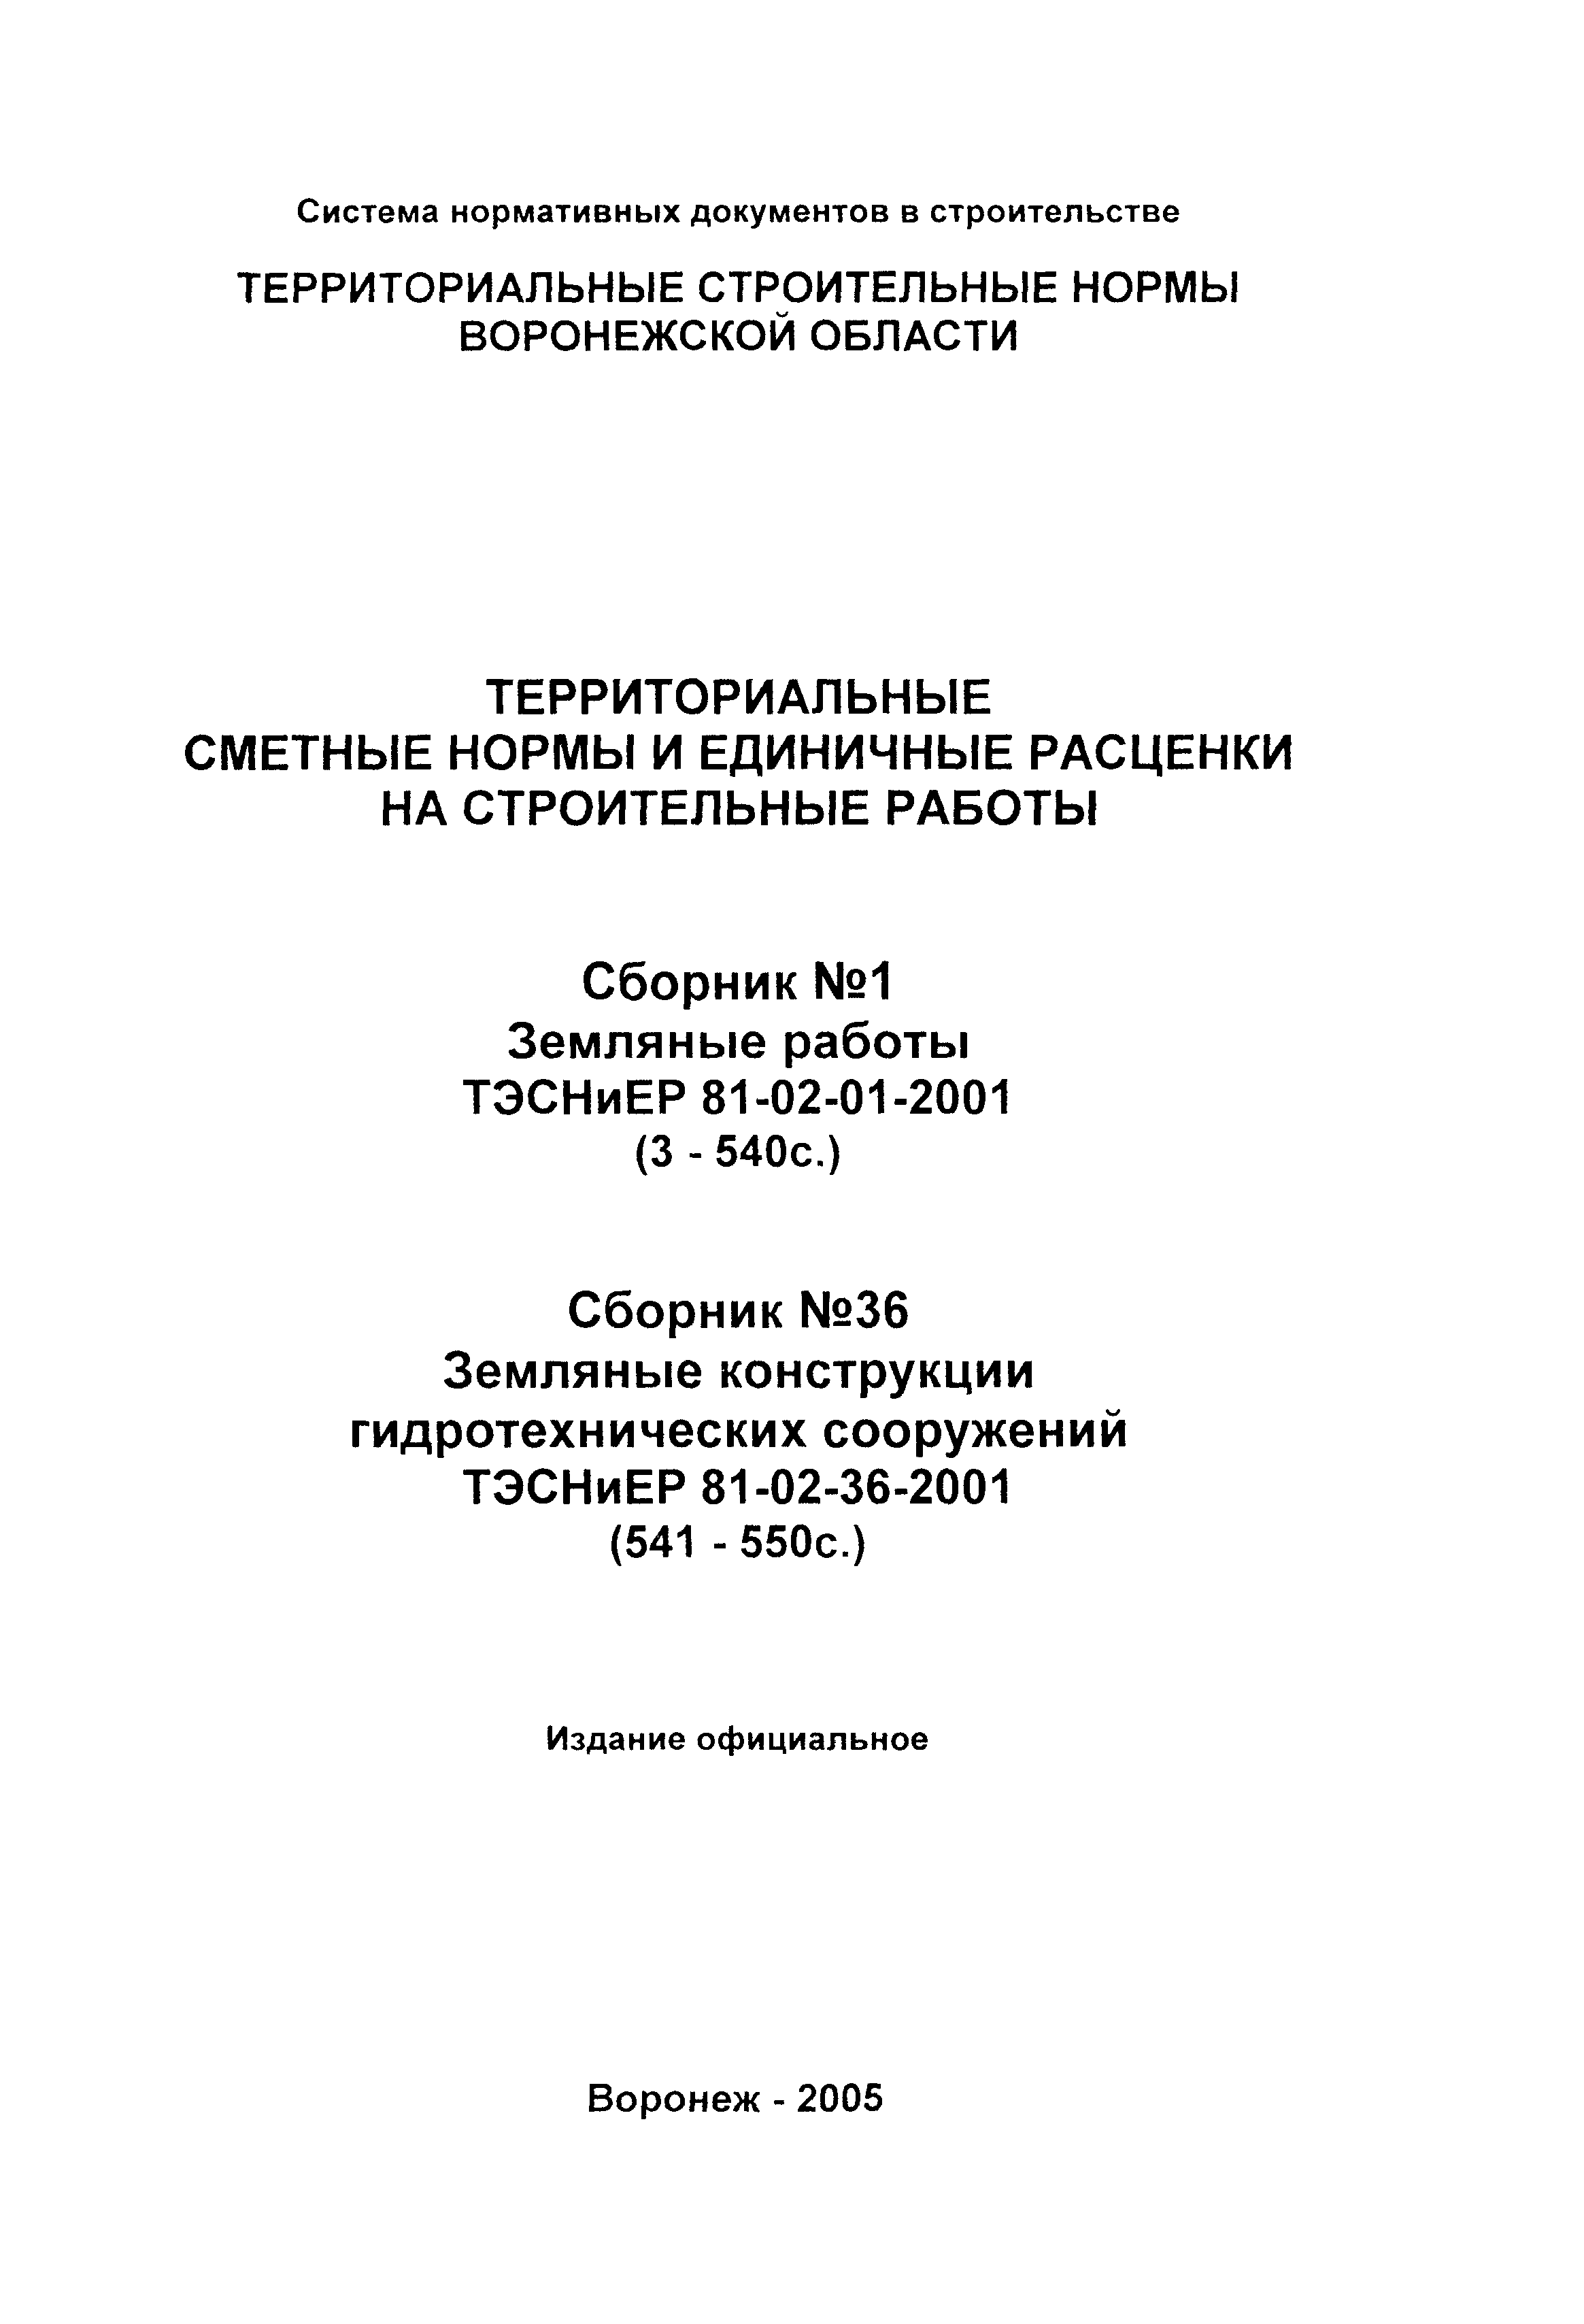 ТЭСНиЕР Воронежской области 81-02-36-2001